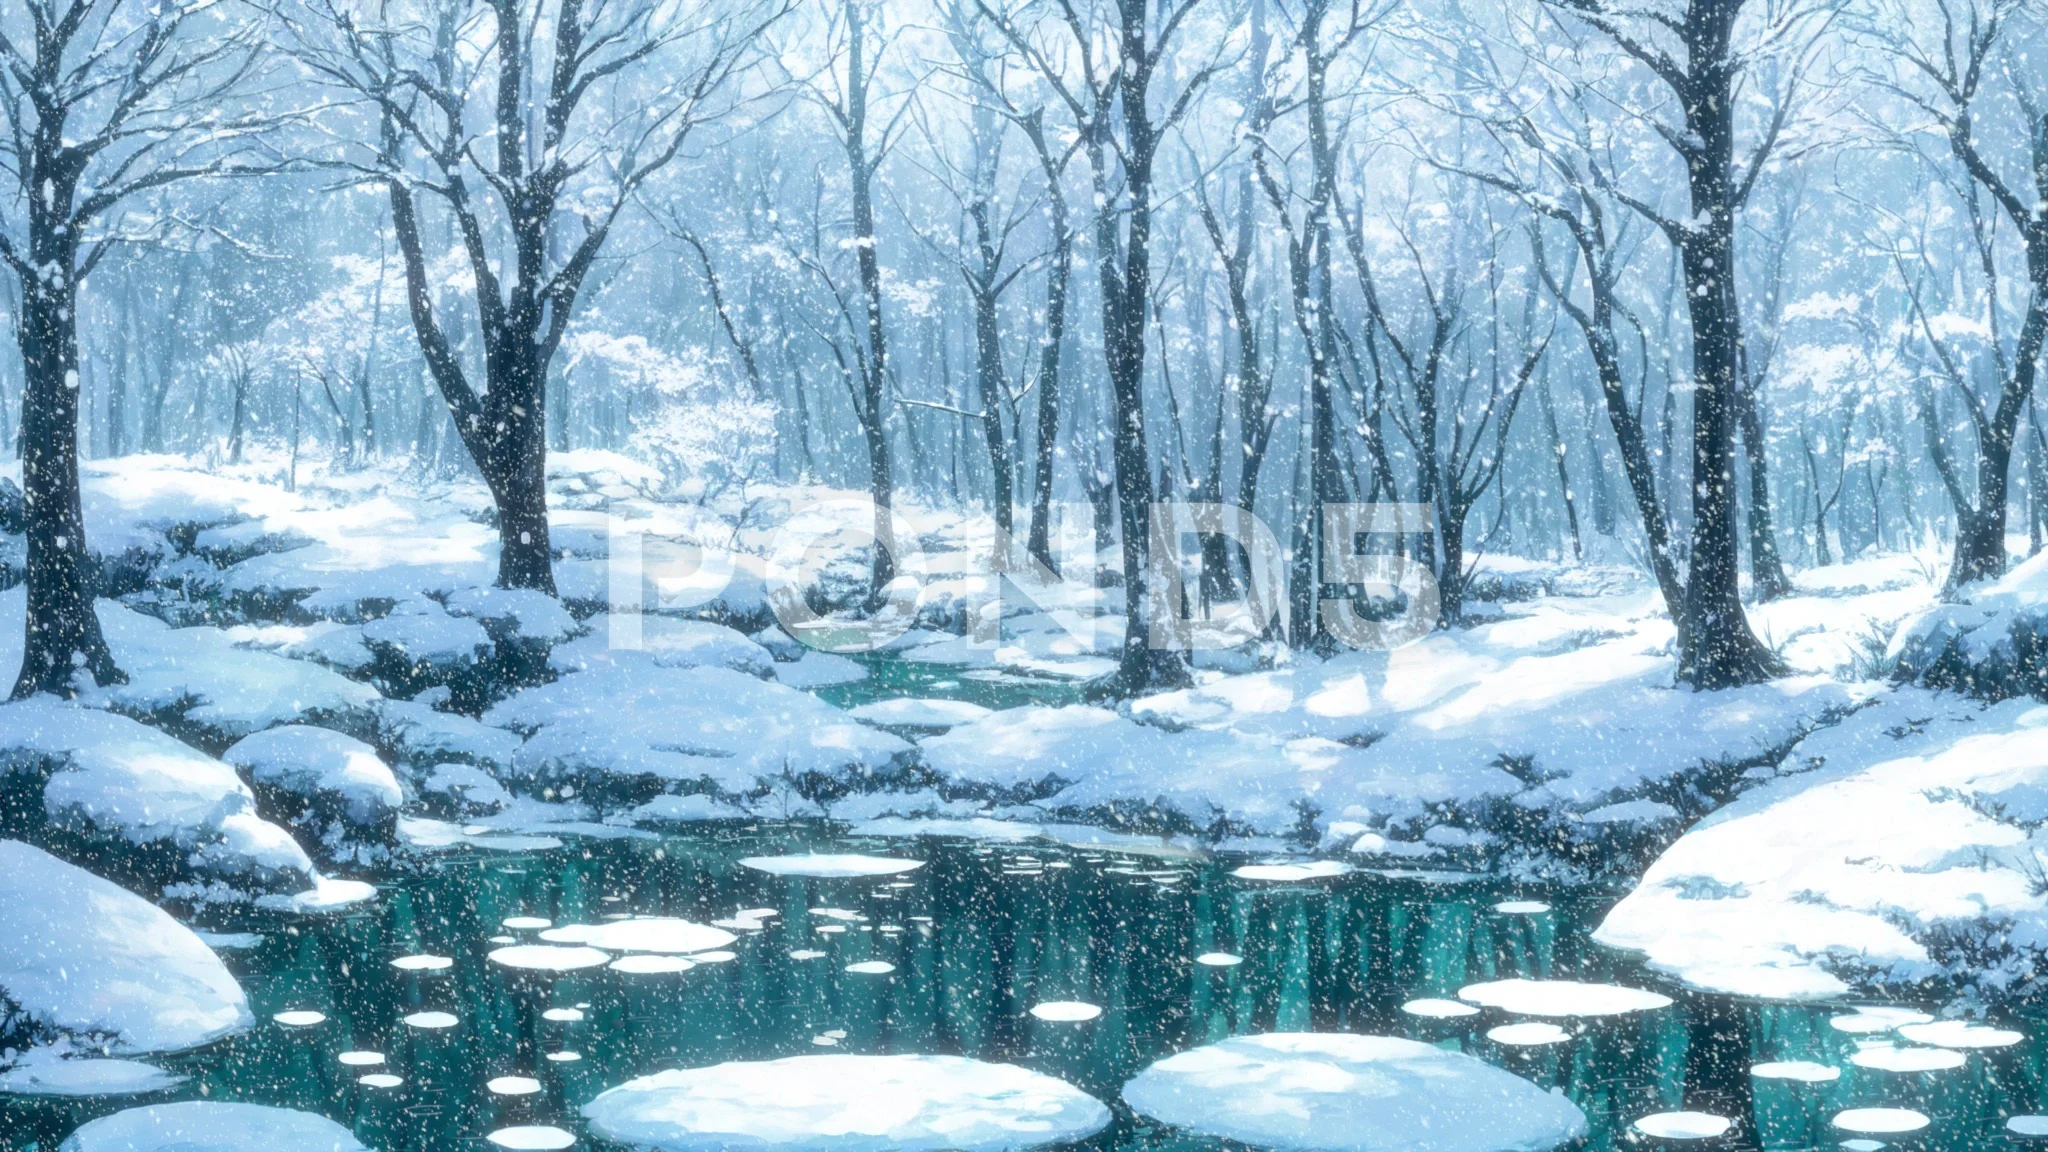 Anime Background Art on Twitter Winter Snow Nisekoi  httpstcoTTdraeTbPd  Twitter